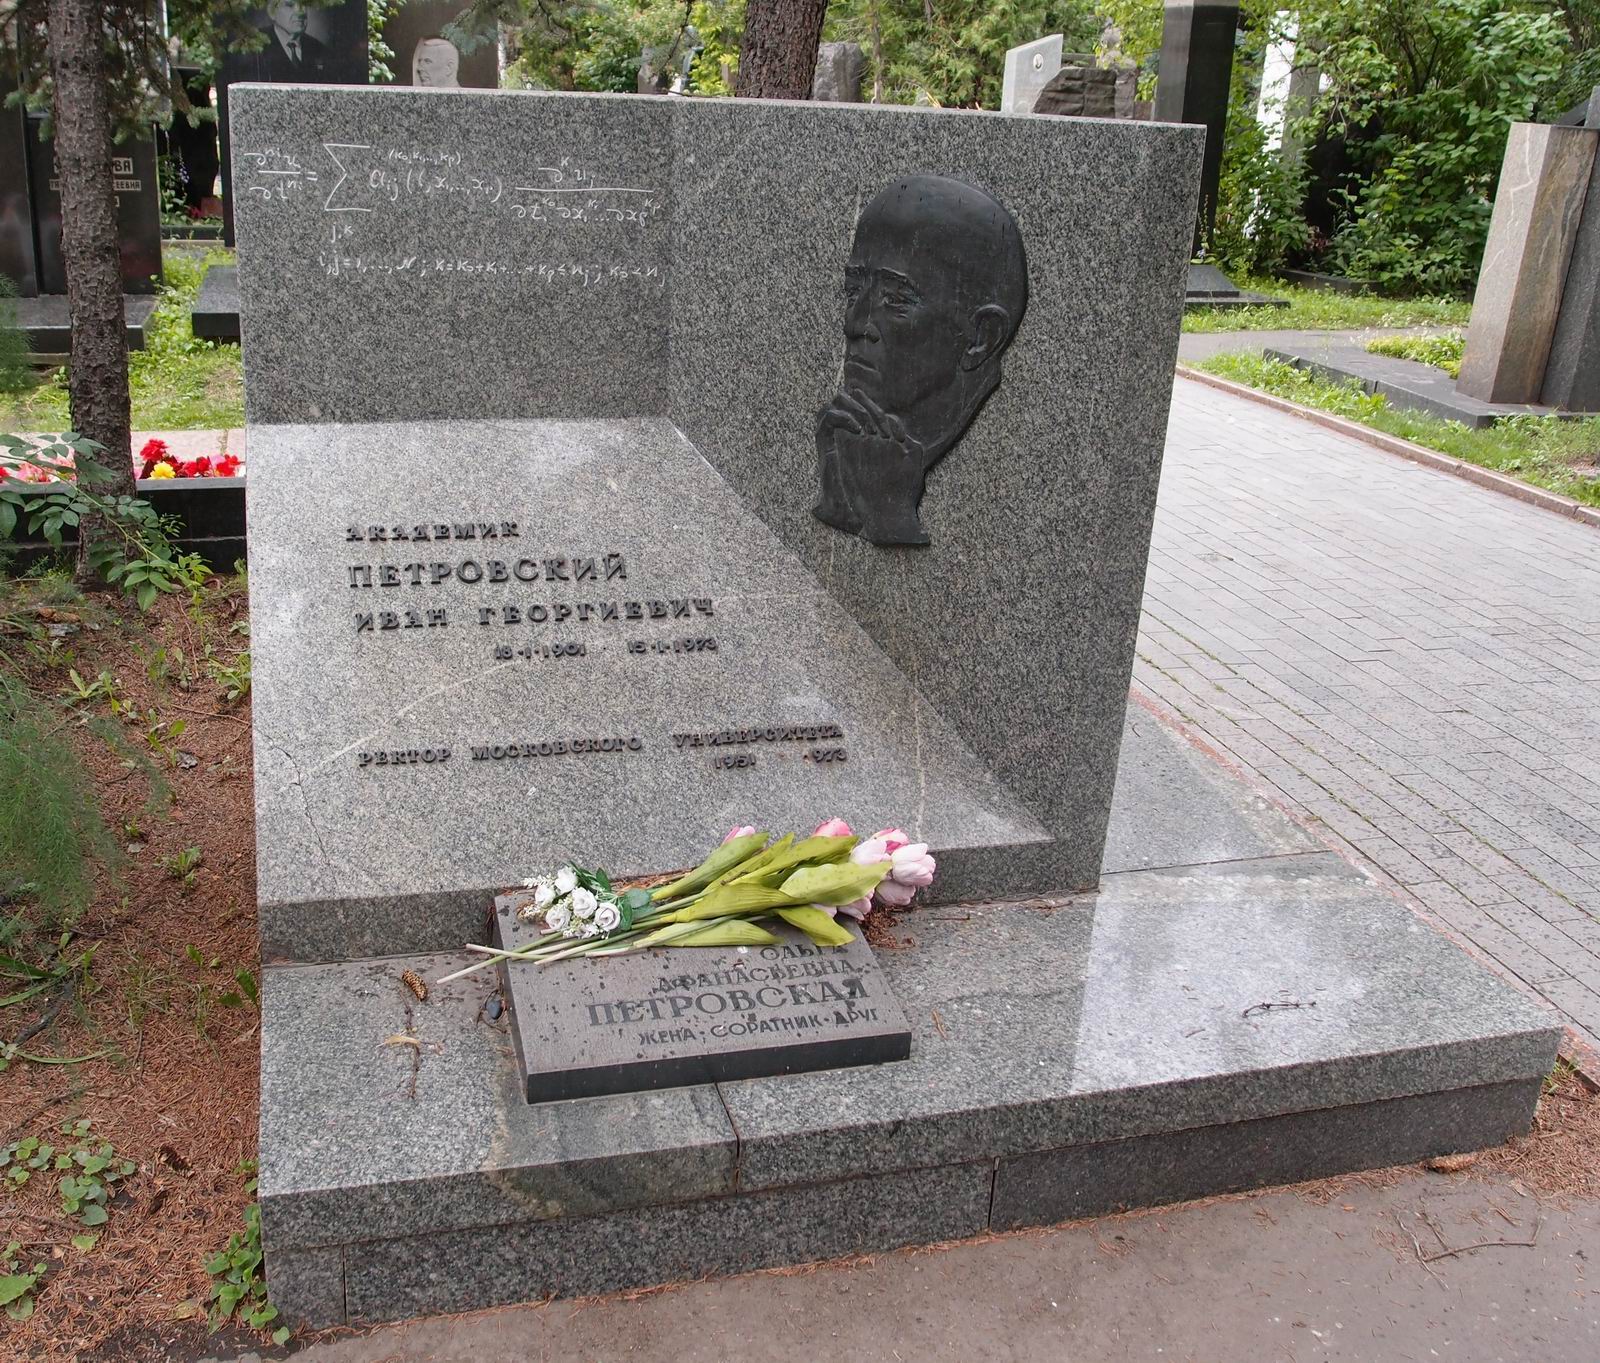 Памятник на могиле Петровского И.Г. (1901-1973), ск. Н.Матвеева, арх. С.Захаров, Ю.Платонов, на Новодевичьем кладбище (7-5-12).